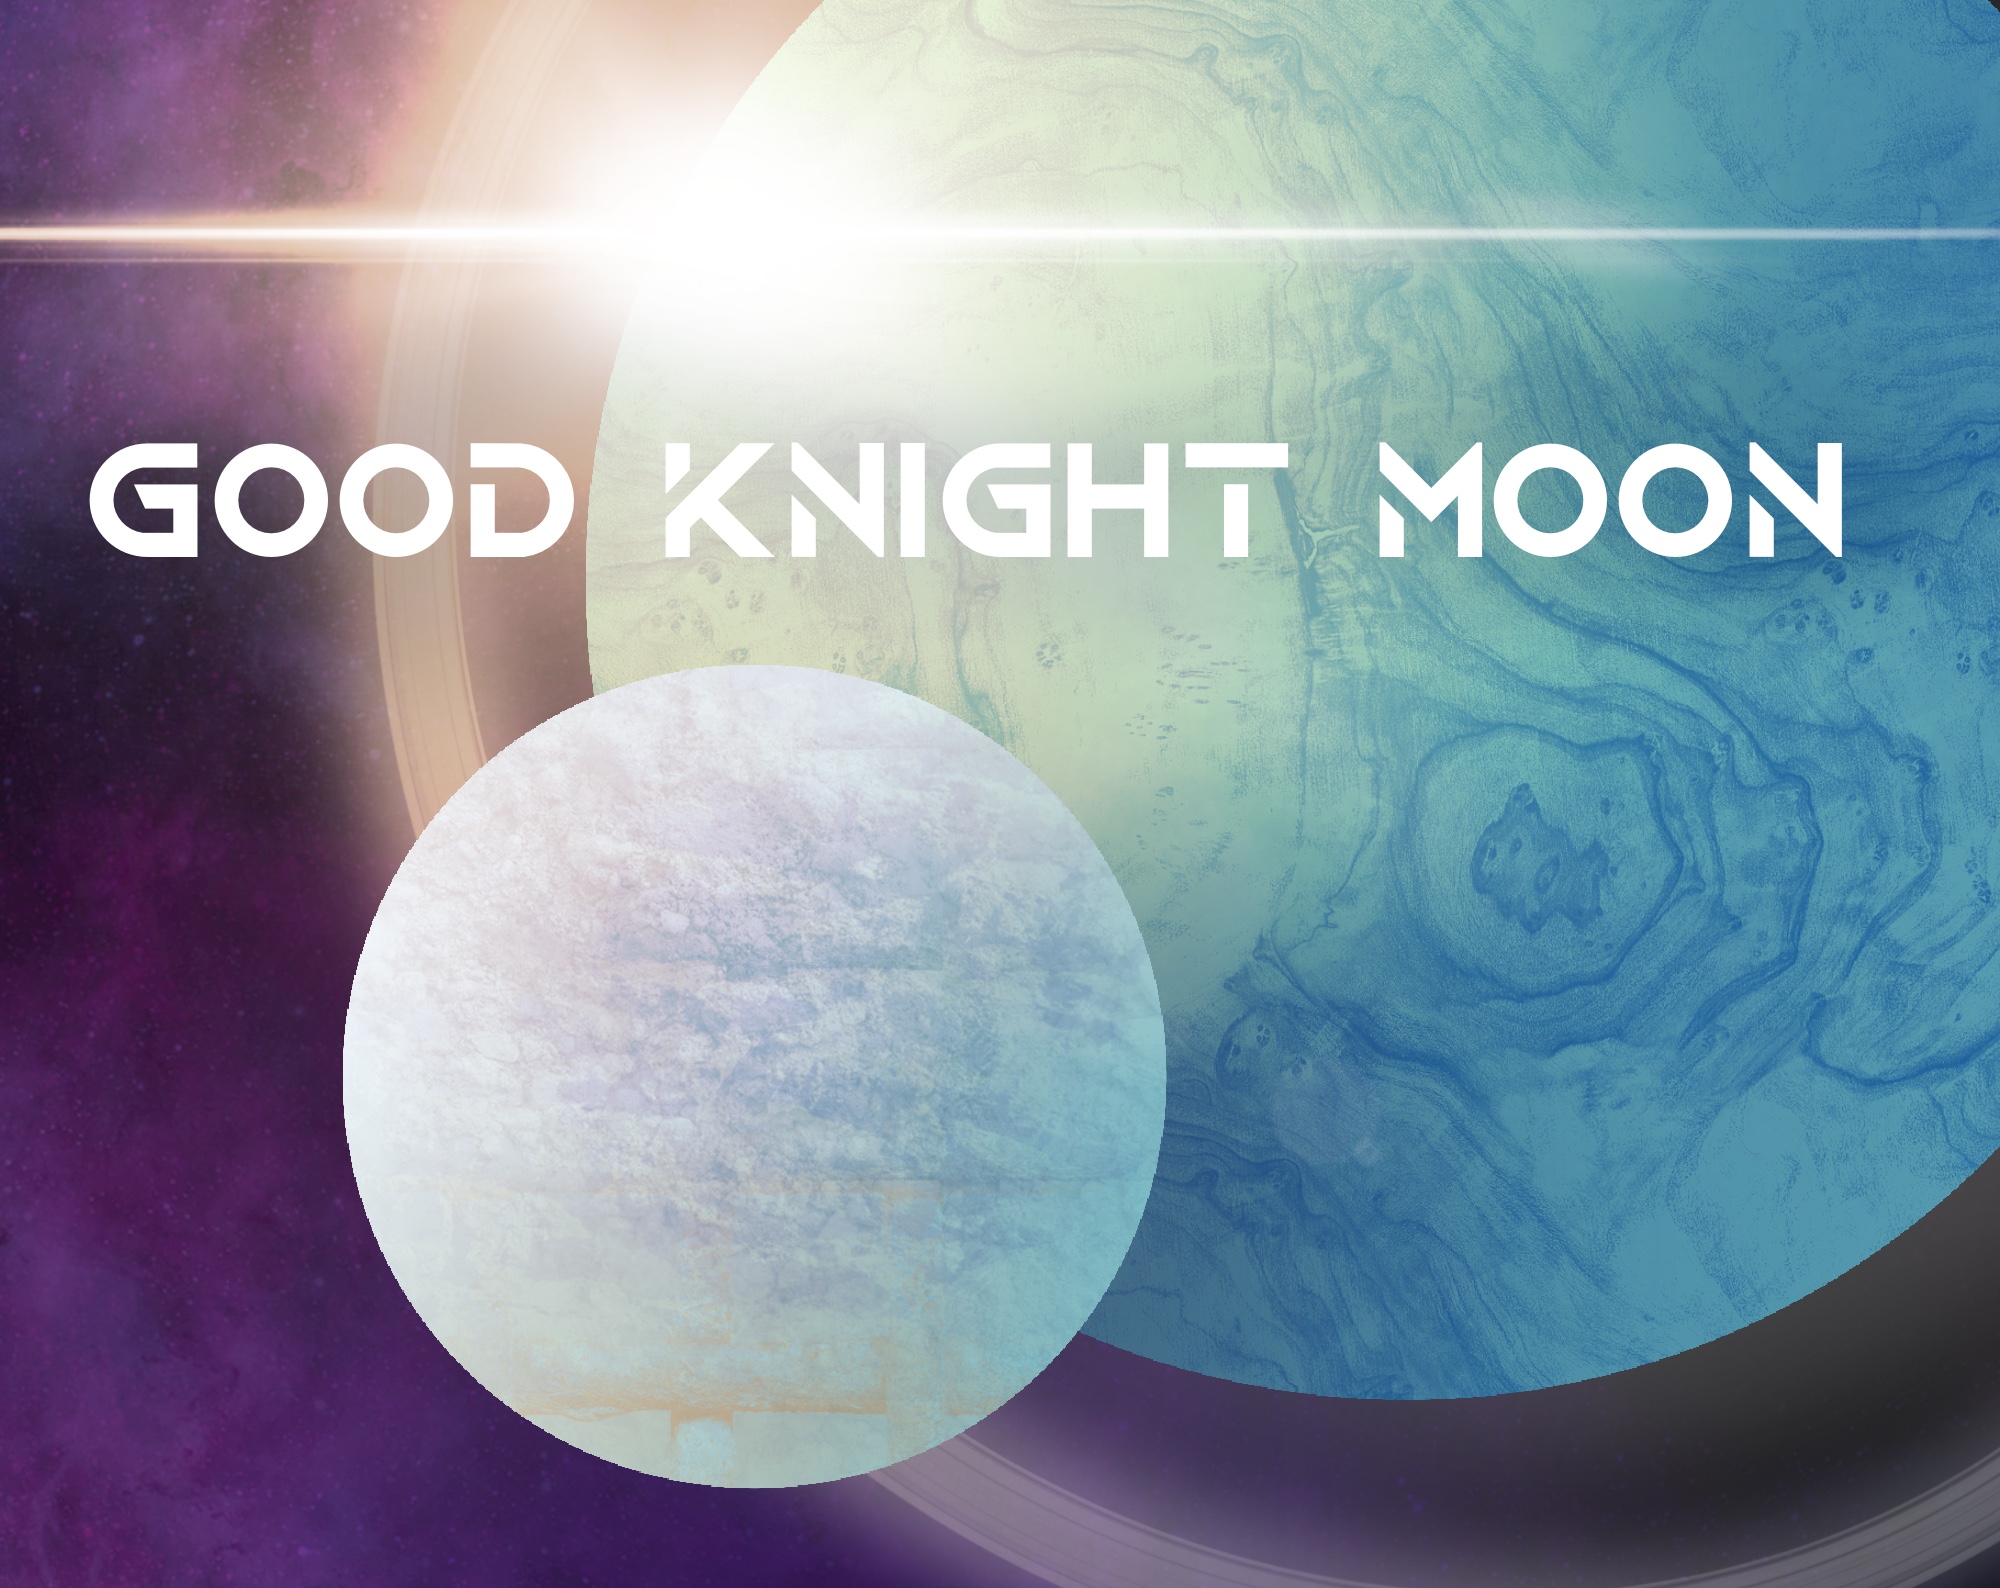 Good Knight Moon